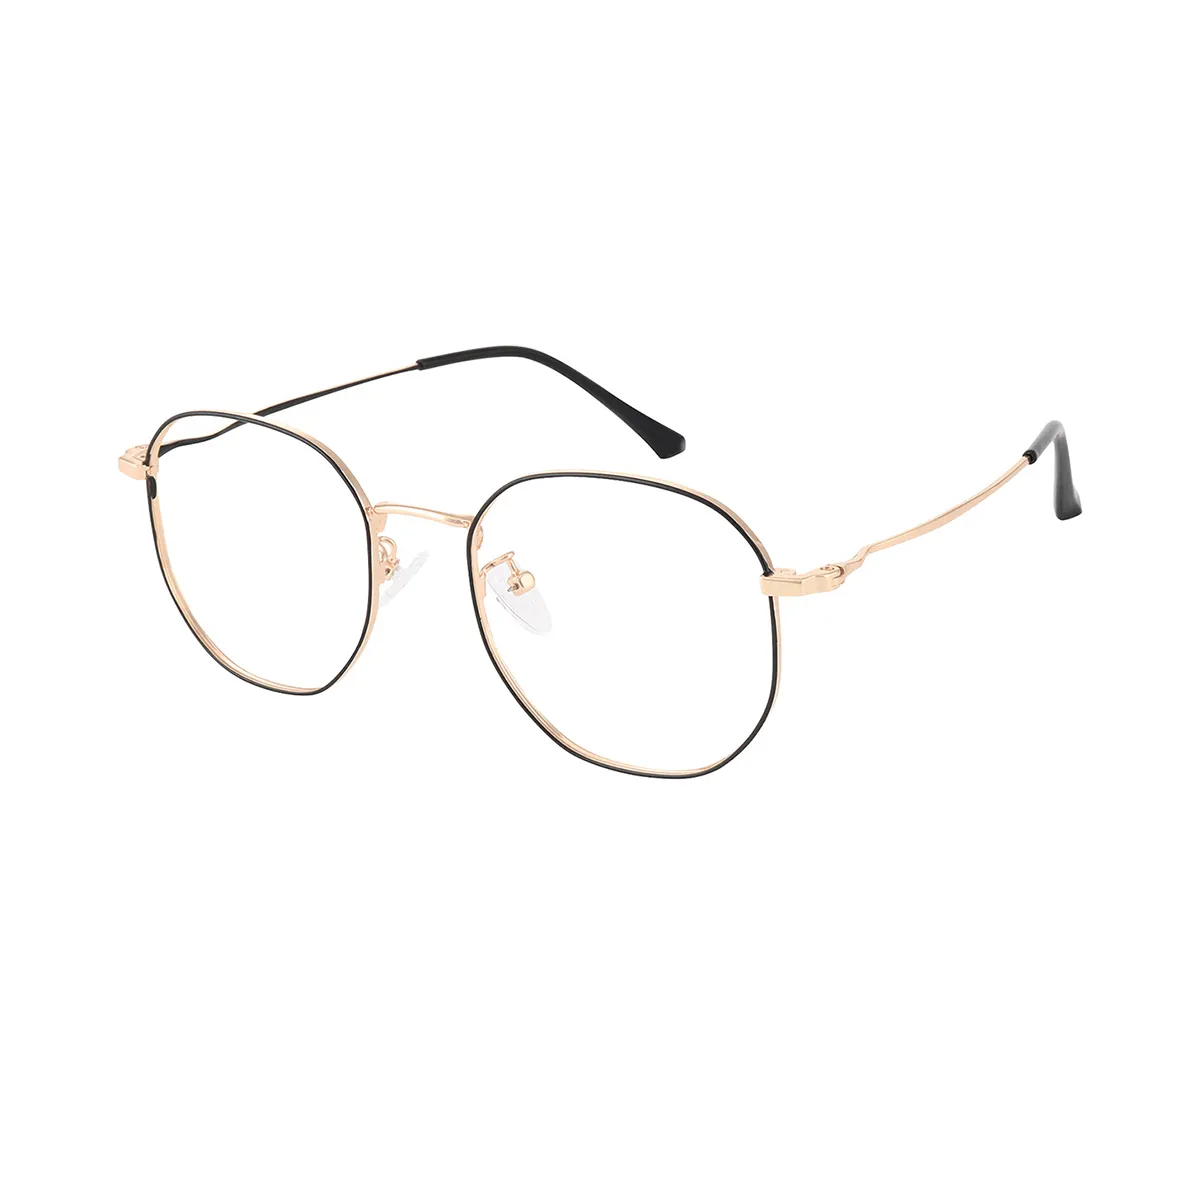 Whitman - Geometric Gold black Glasses for Women